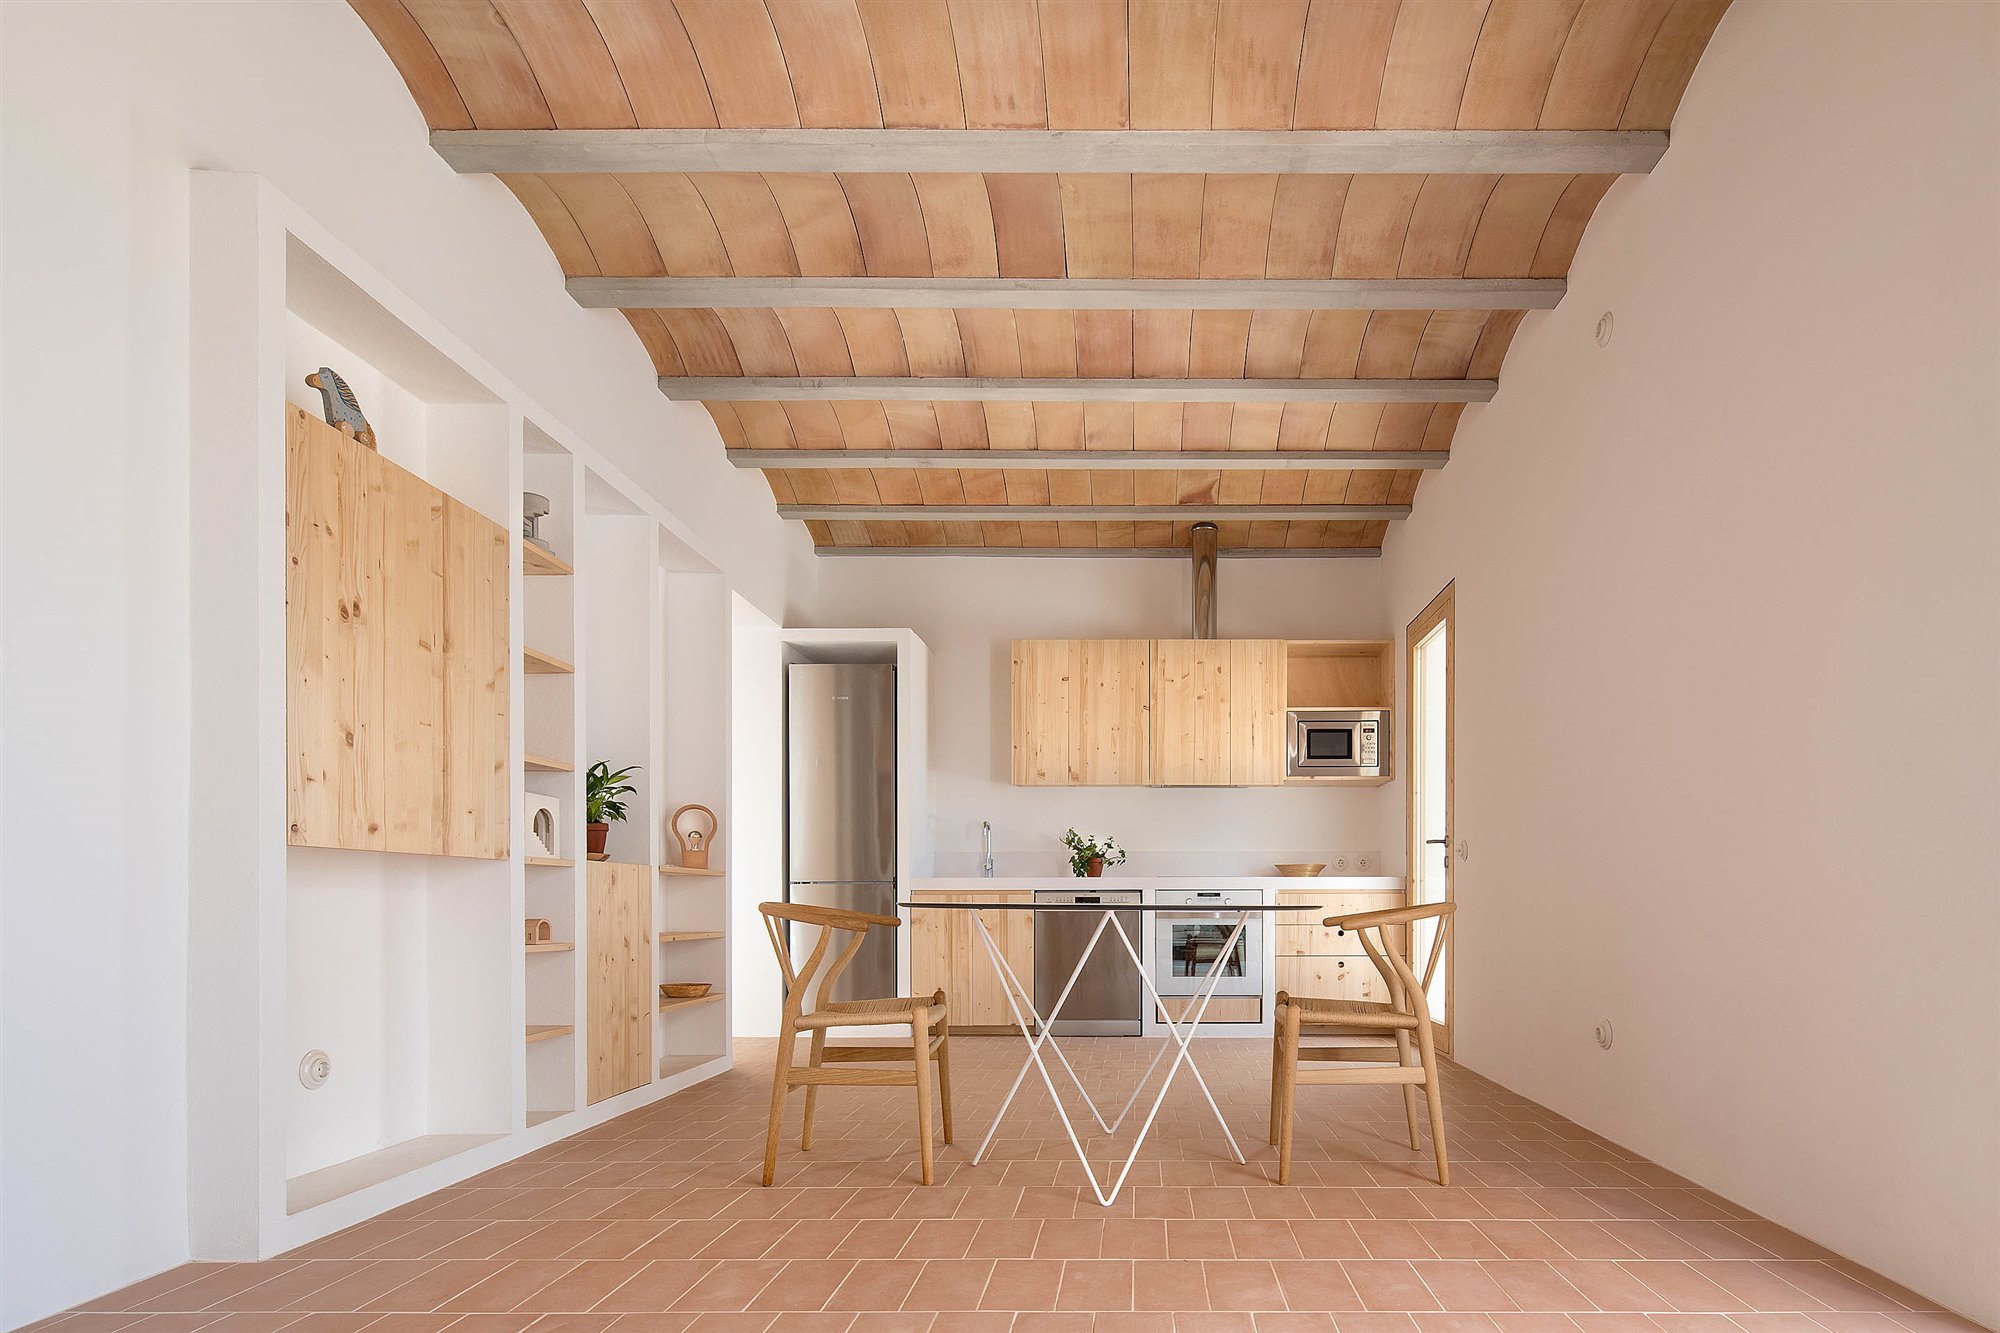 Casa blanca en Formentera del arquitecto Maria Castello comedor con suelo de barro